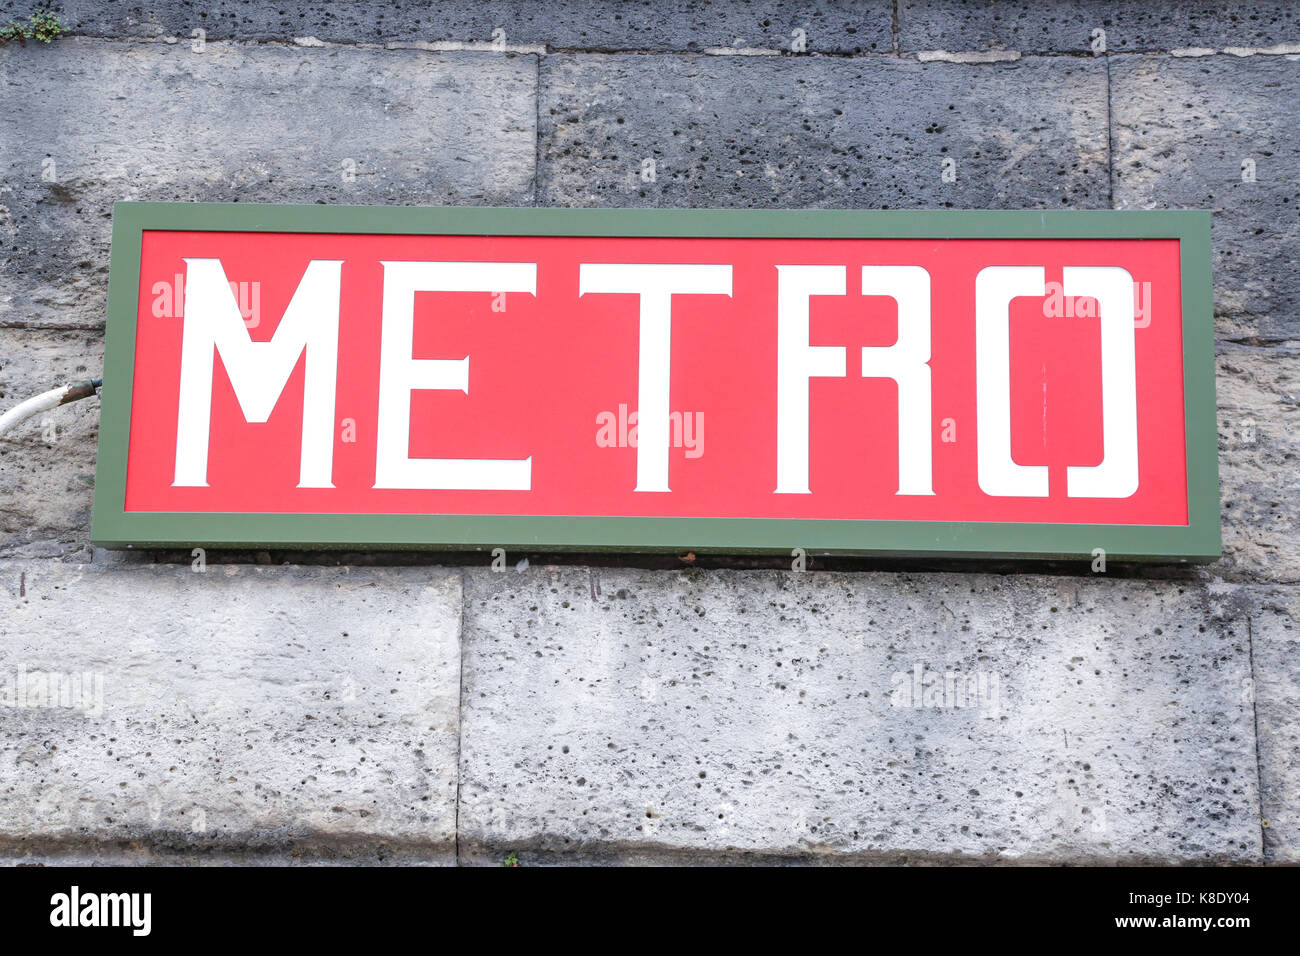 Paris, France: metro logo signs, outside place de la concorde in the central district of Paris Stock Photo